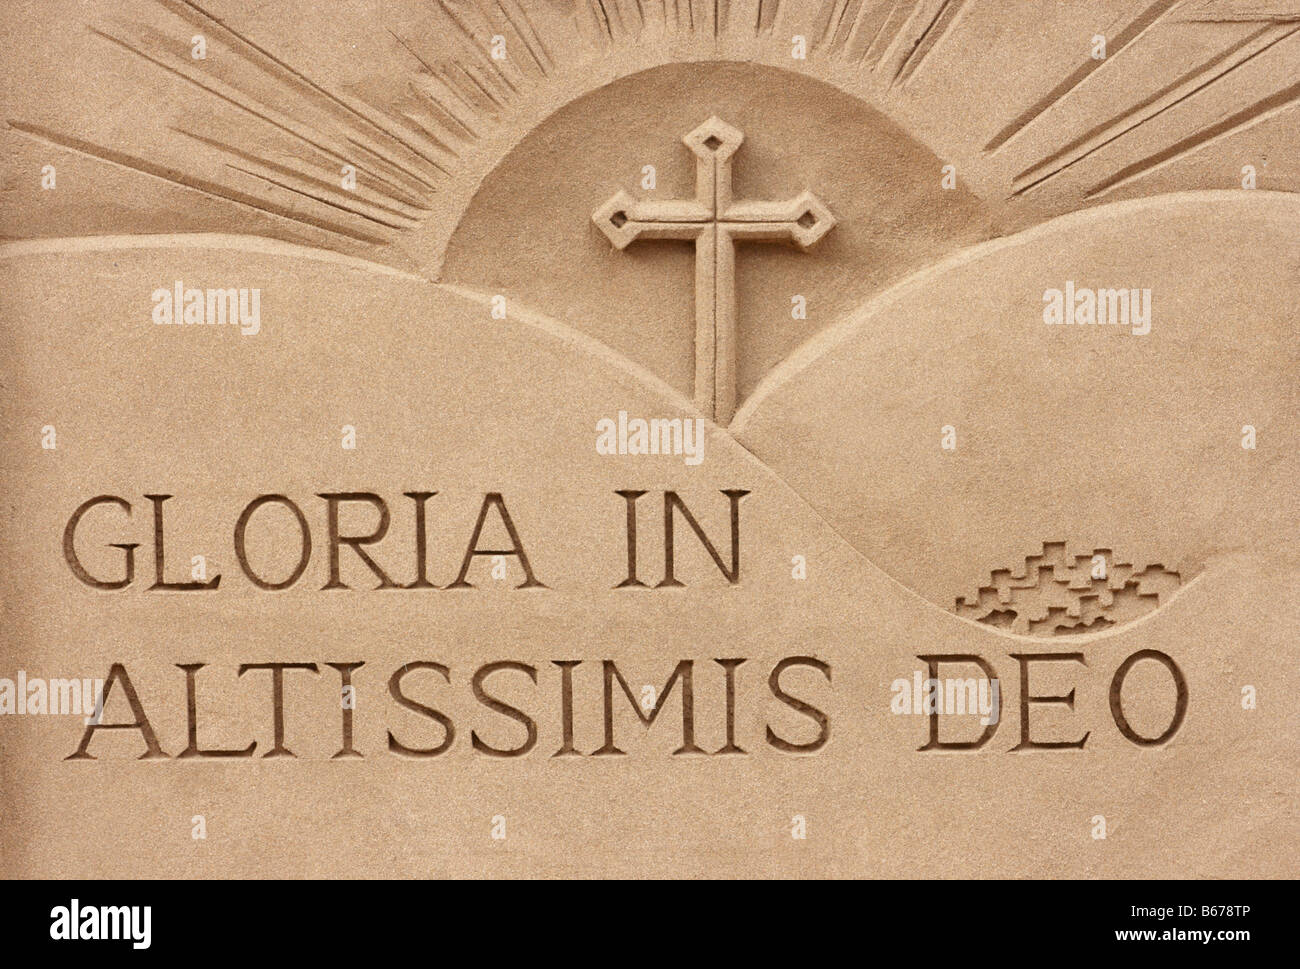 "Gloria in Altissimis Deo. (Gloire à Dieu au plus haut) partie de crèche de sculptures de sable. Banque D'Images